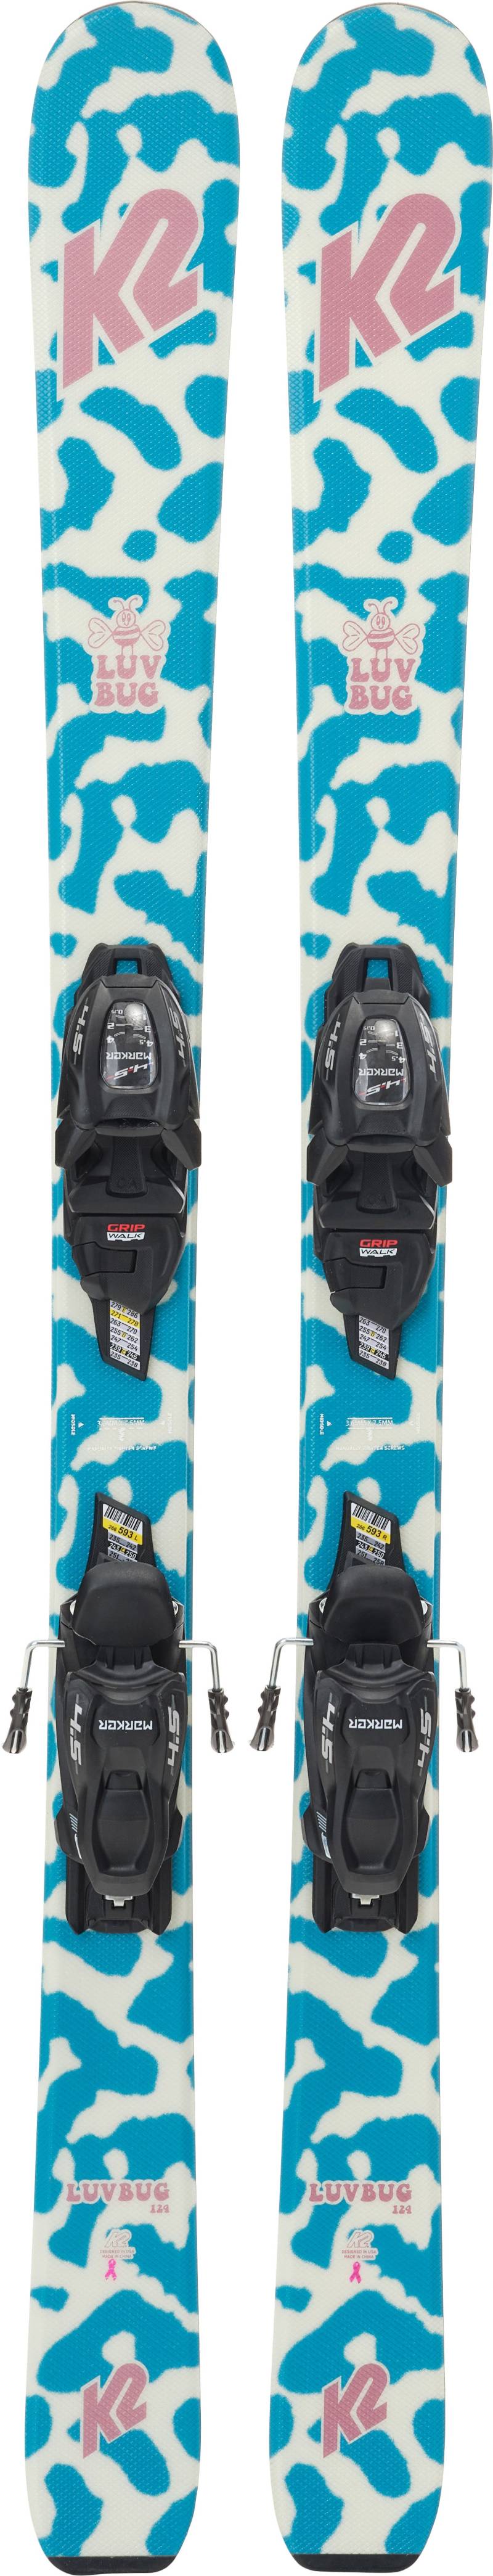 K2 Luv Bug Fdt 4.5 Skier inkl. Bindungen, 112 cm von K2